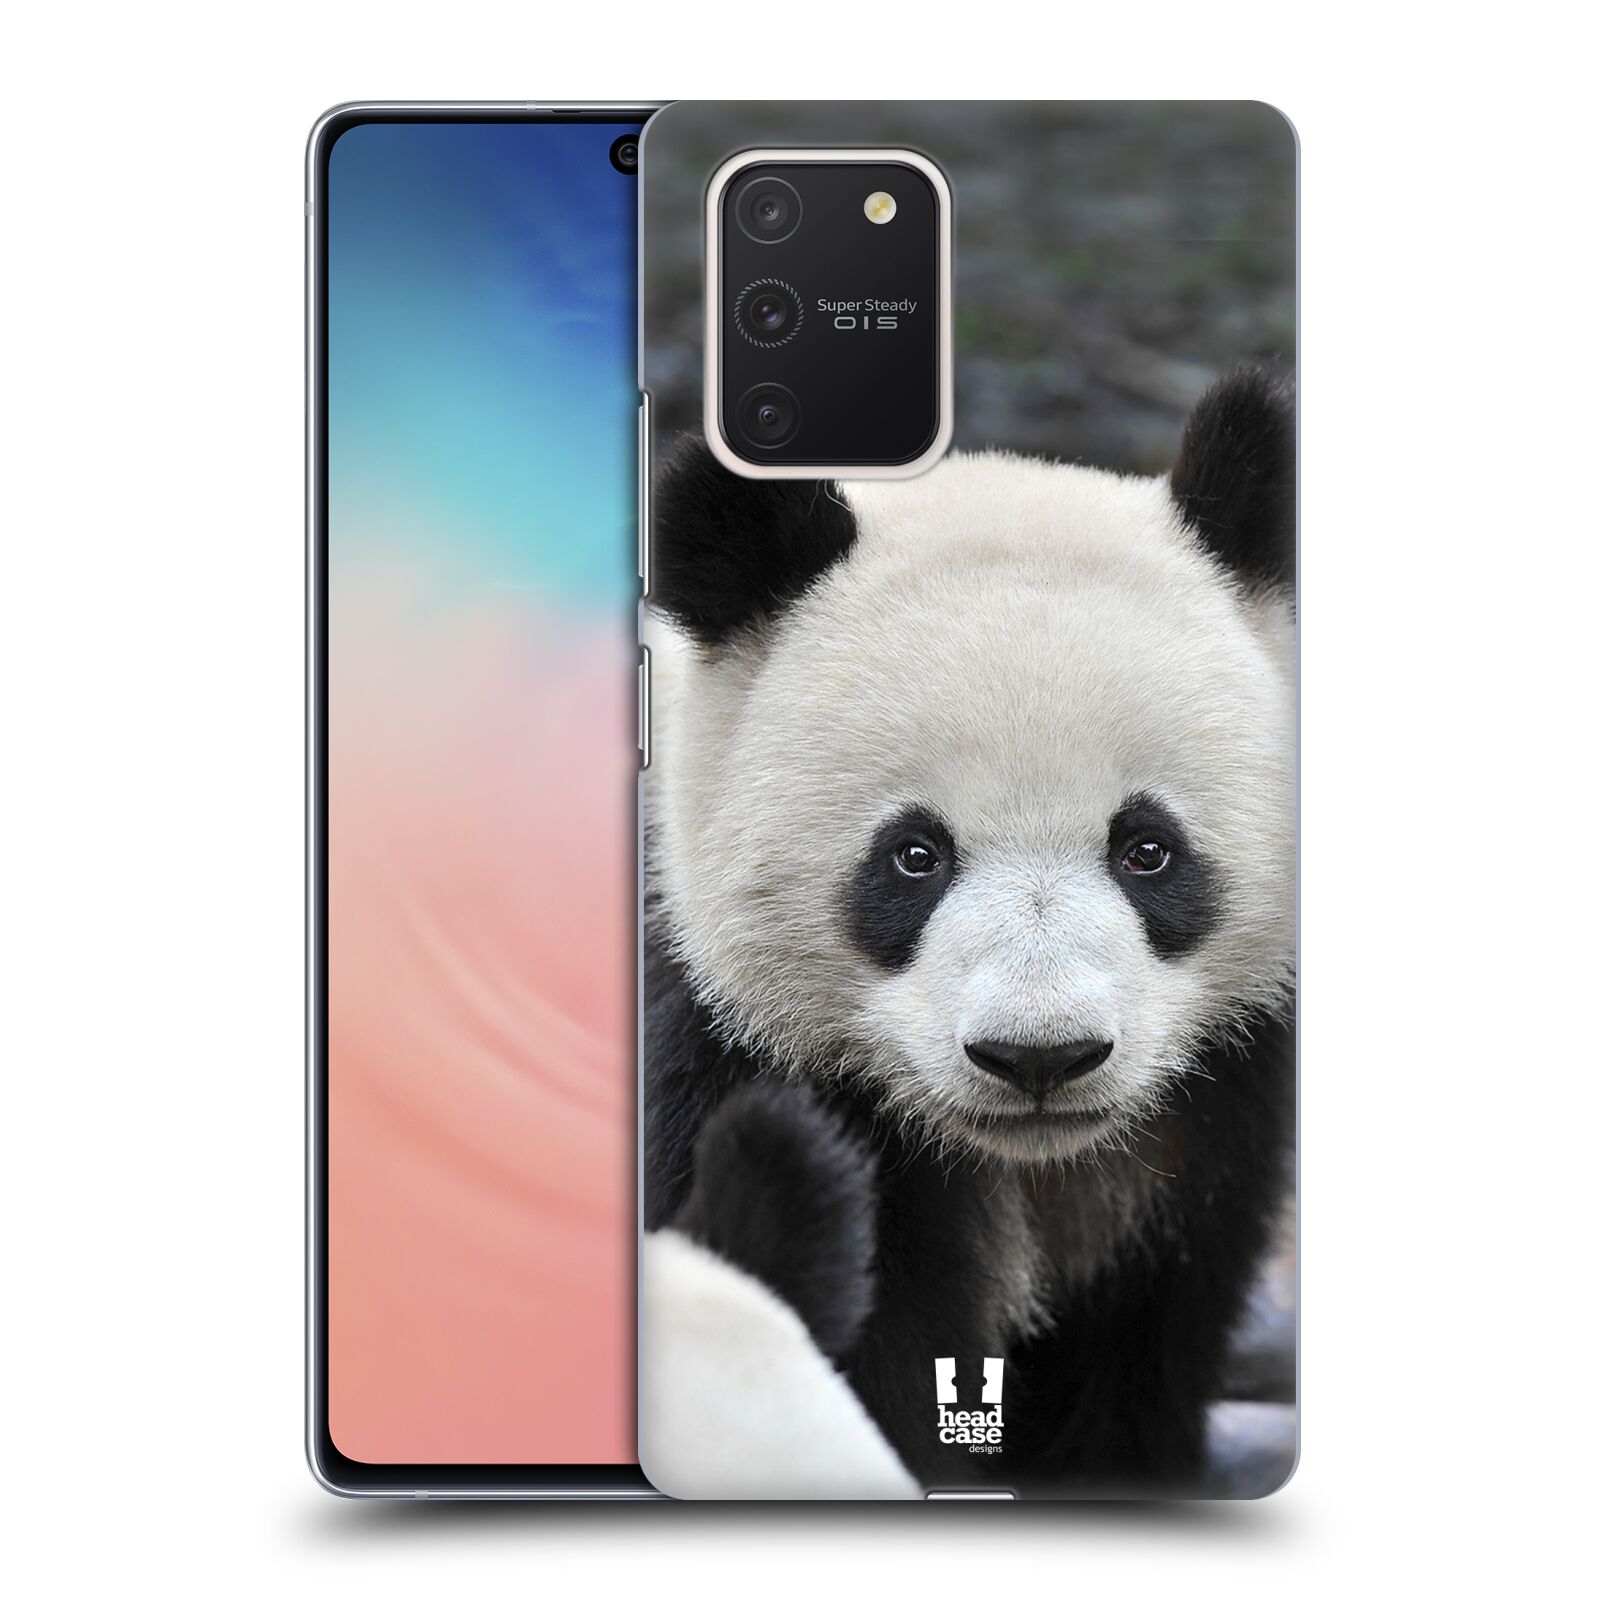 Zadní obal pro mobil Samsung Galaxy S10 LITE - HEAD CASE - Svět zvířat medvěd panda